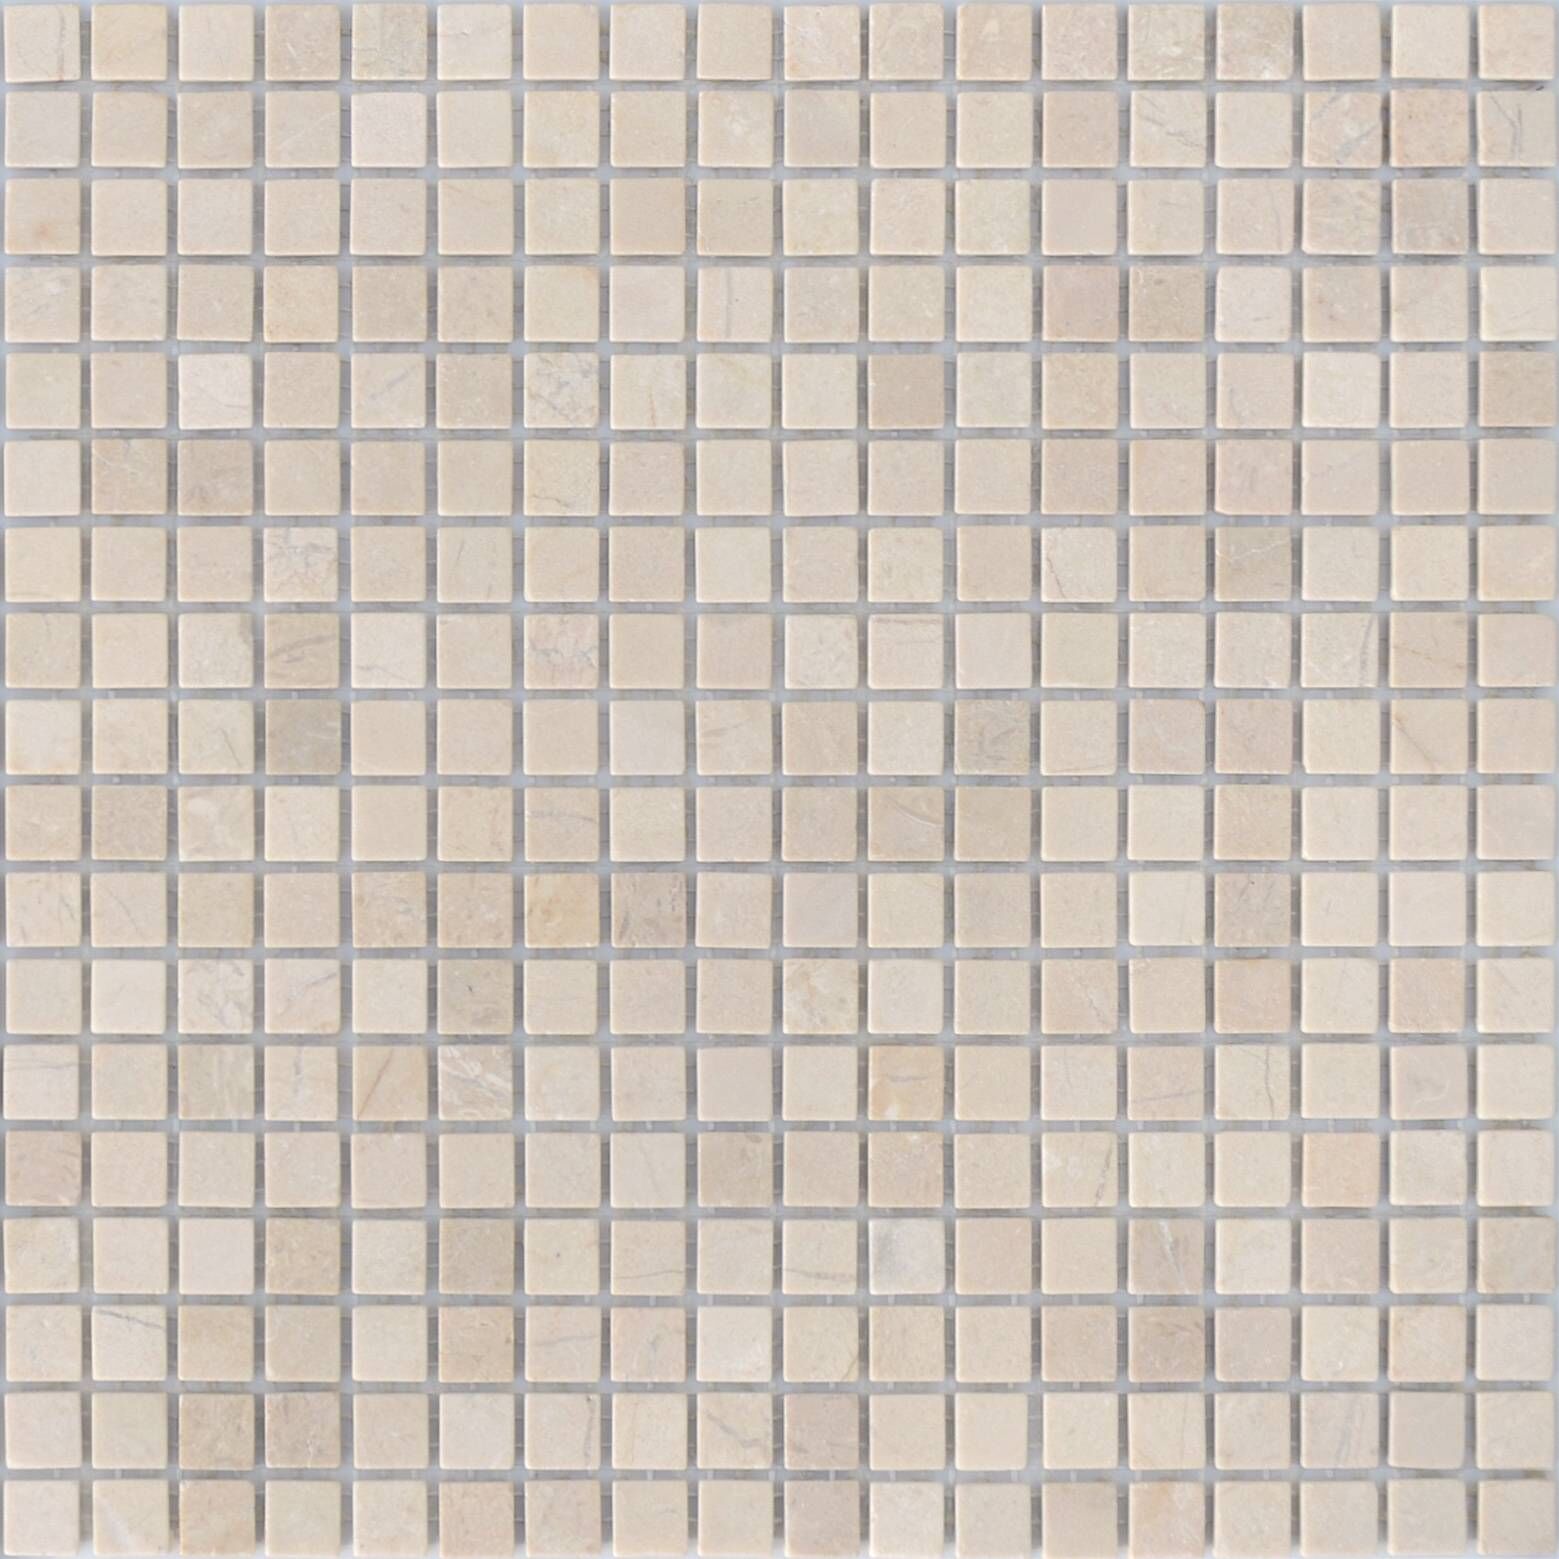 Керамическая плитка Керамин Caramelle Pietrine Crema Marfil Бежевая Полированная Мозаика 4мм 30,5х30,5 (1,5х1,5)